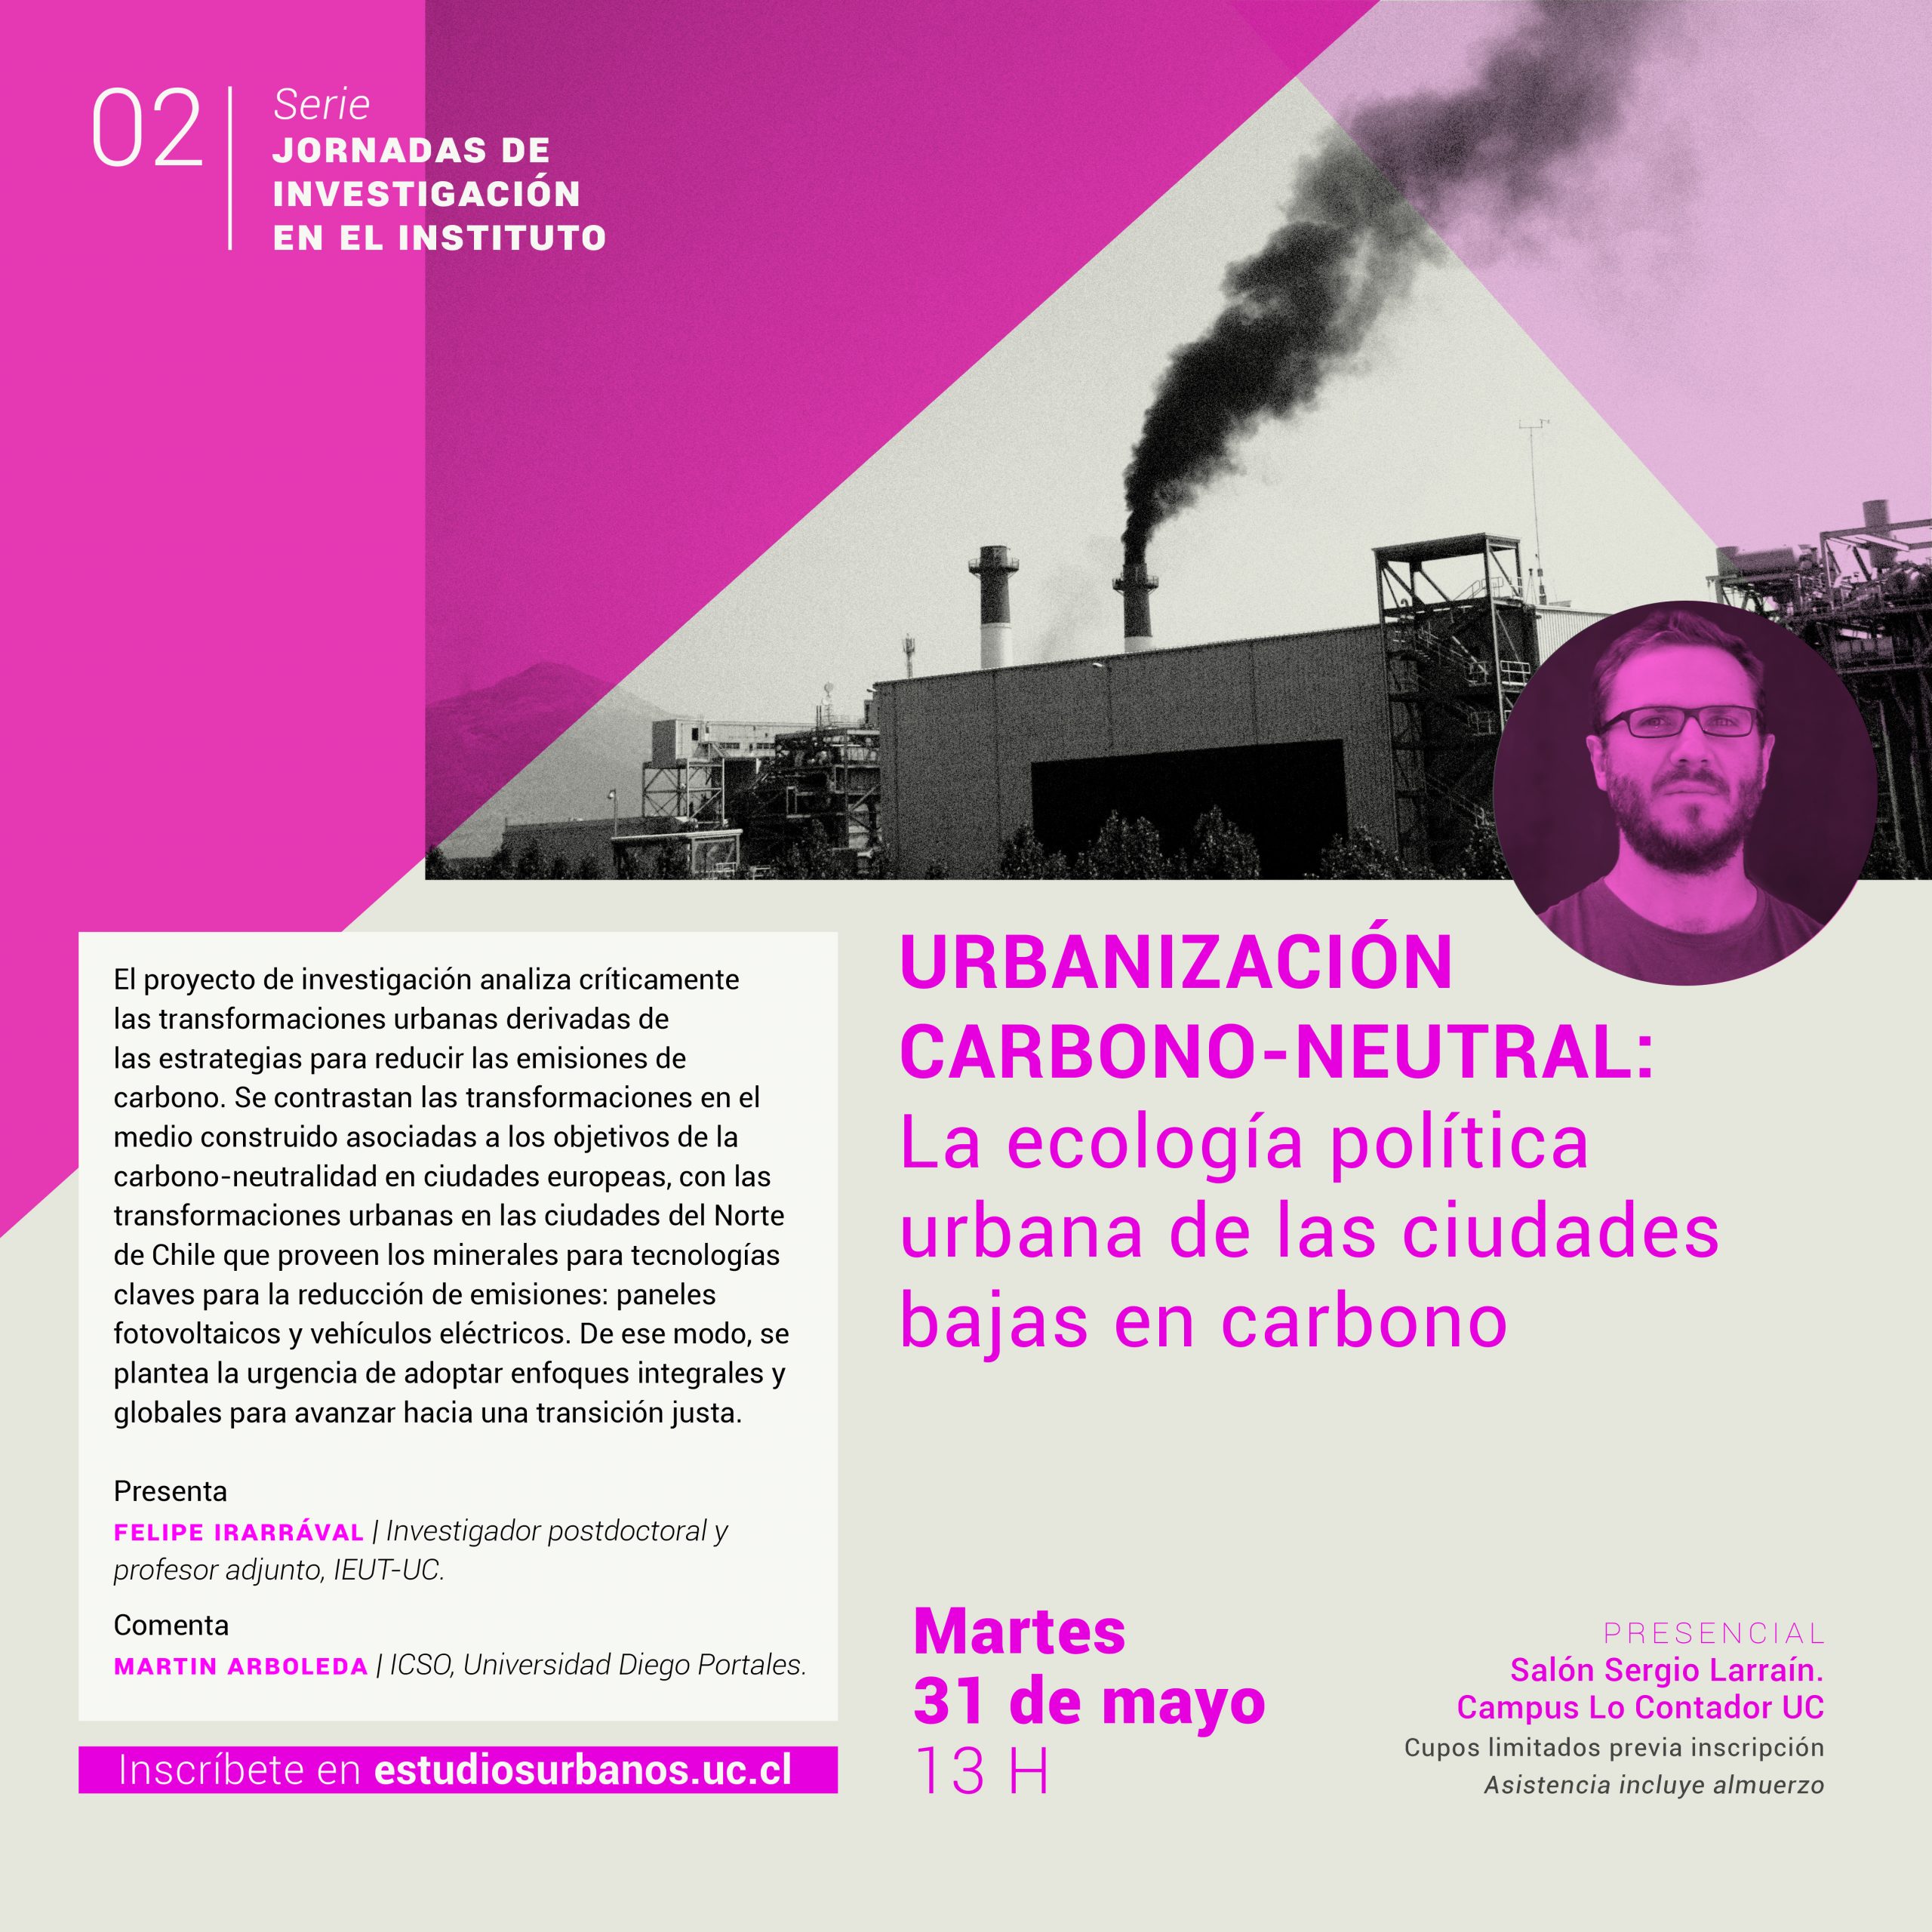 Jornadas de Investigación | 02 | Urbanización carbono-neutral: La ecología política urbana de las ciudades bajas en carbono